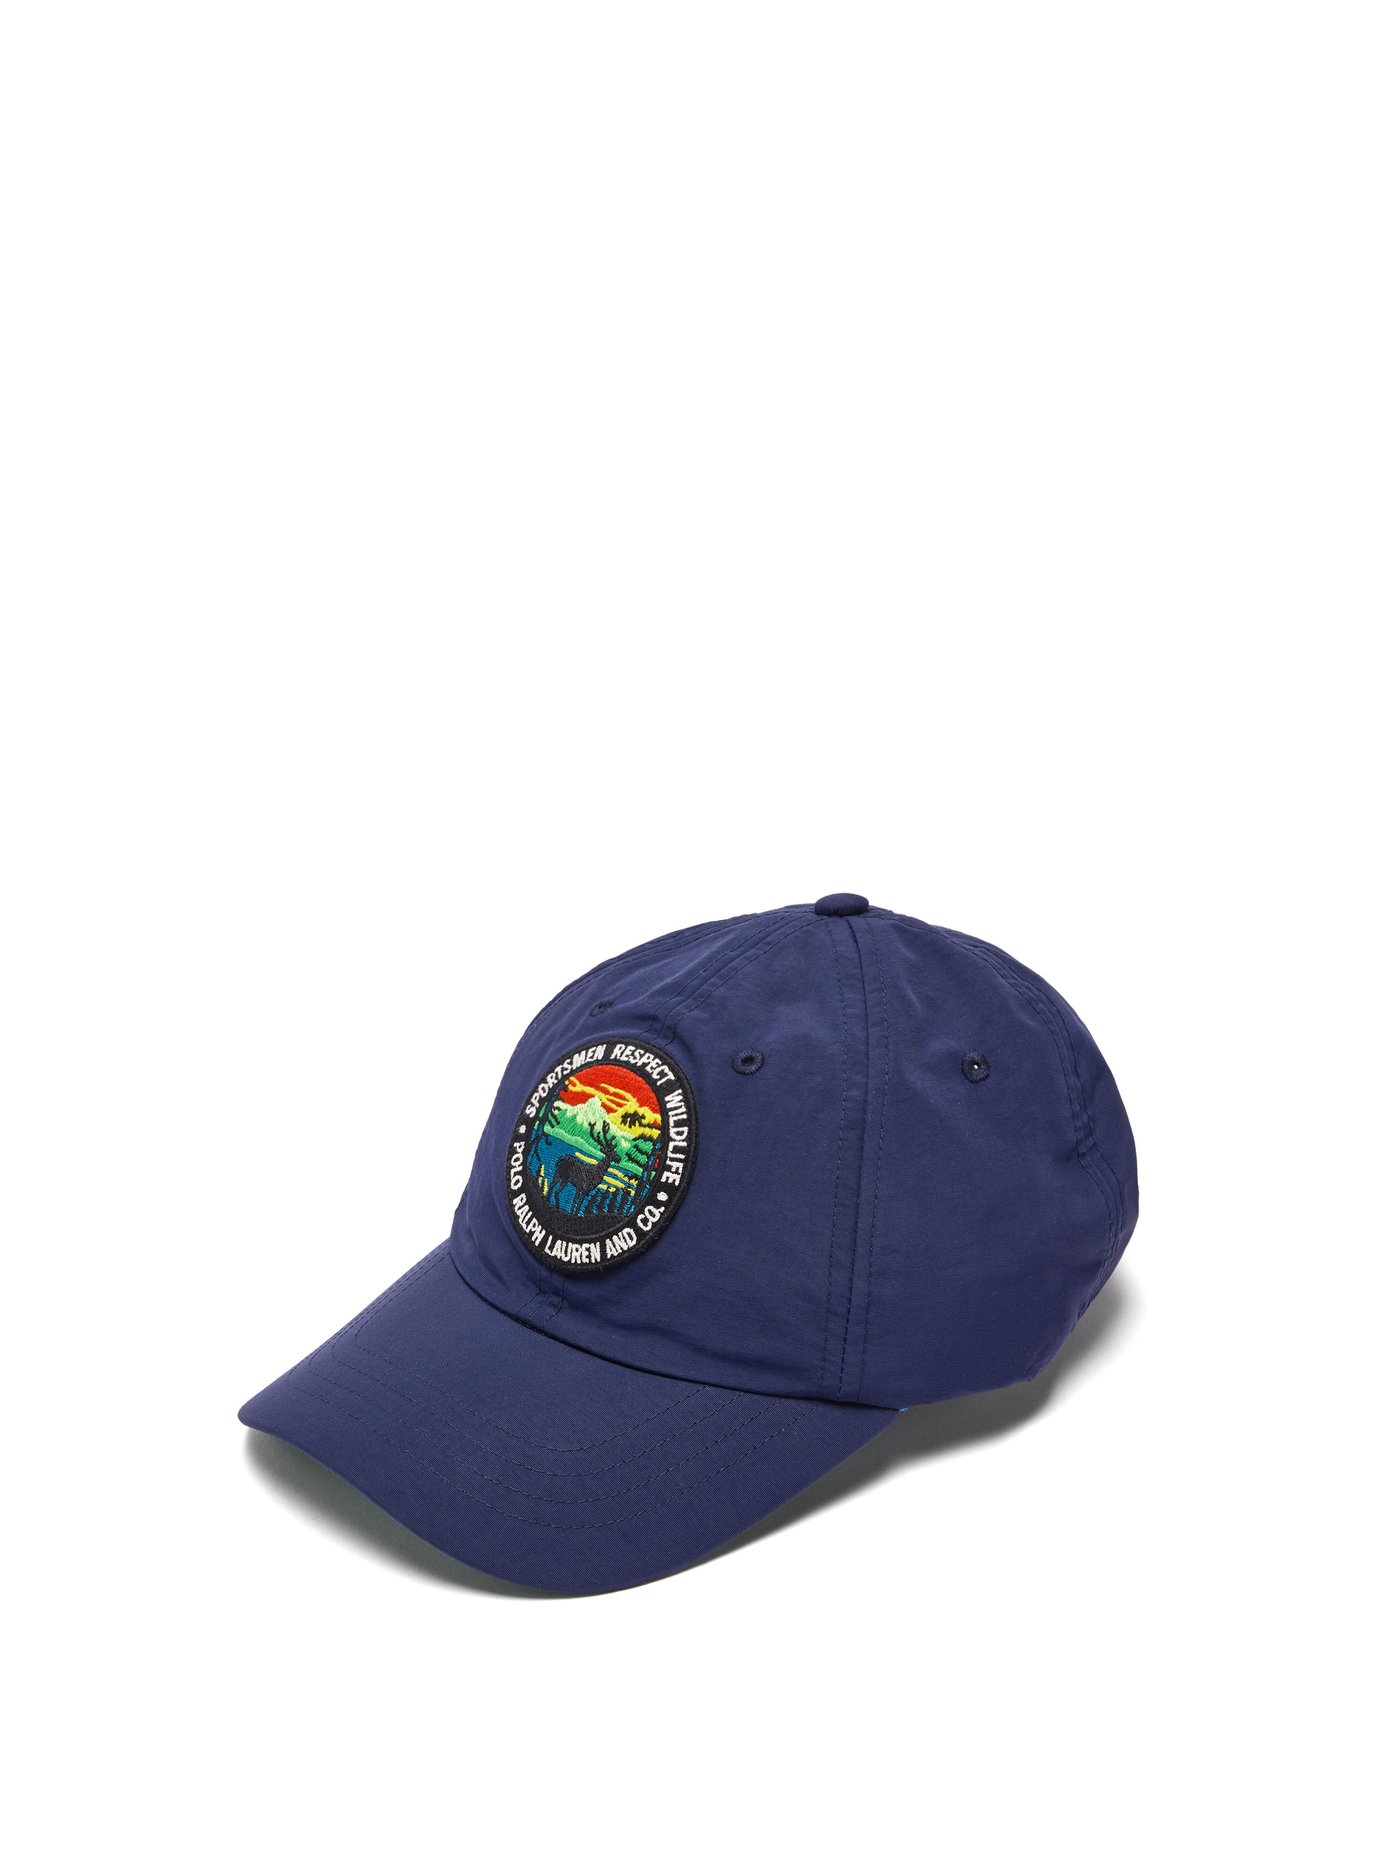 purple ralph lauren hat